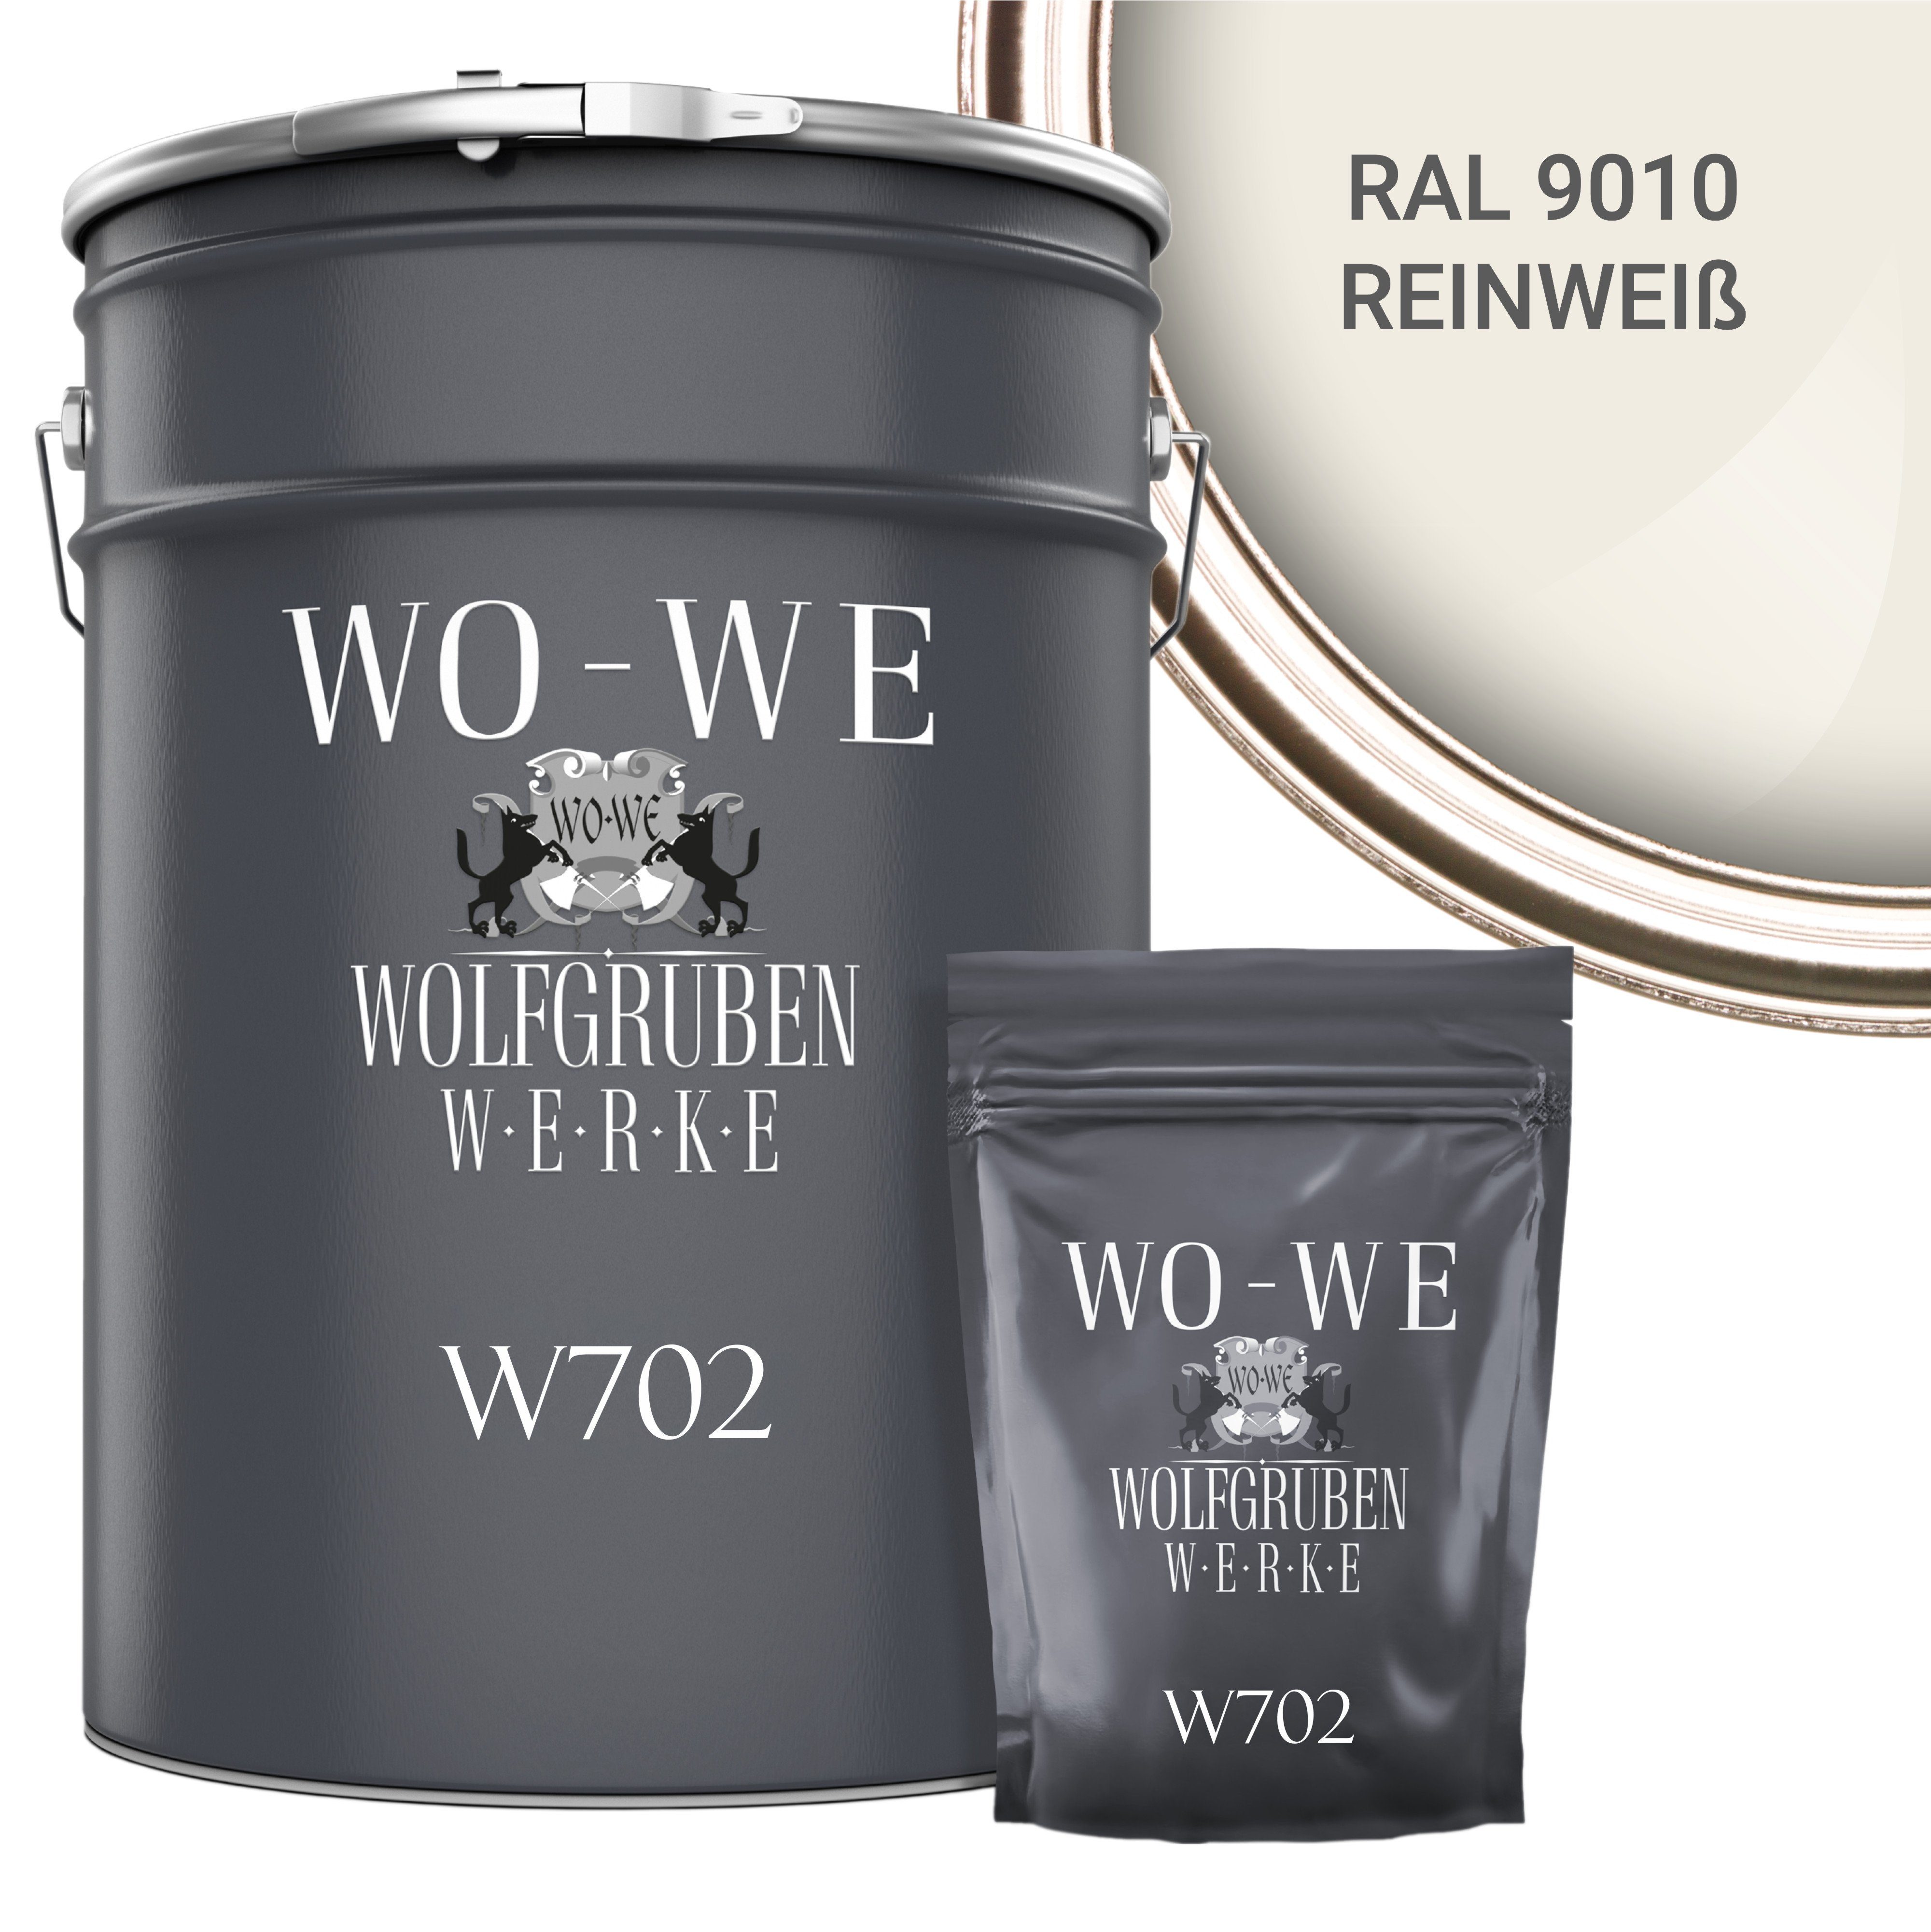 WO-WE Bodenversiegelung 2K Garagenfarbe Bodenbeschichtung W702, 2,5-20Kg, Seidenglänzend, Epoxidharz RAL 9010 Reinweiss